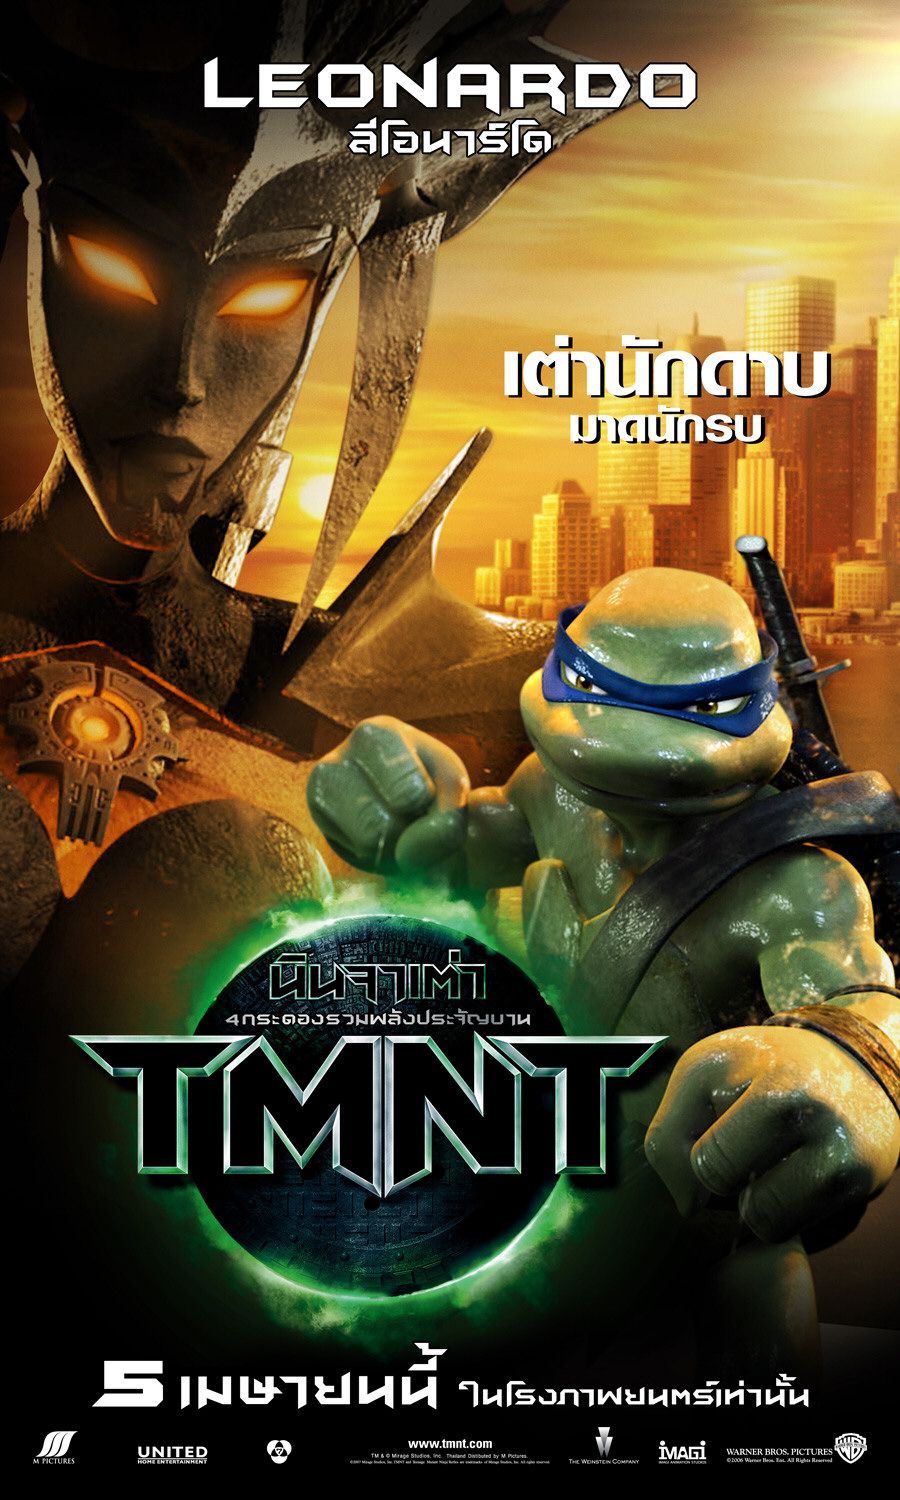 Extra Large Movie Poster Image for Teenage Mutant Ninja Turtles (#10 of 16)